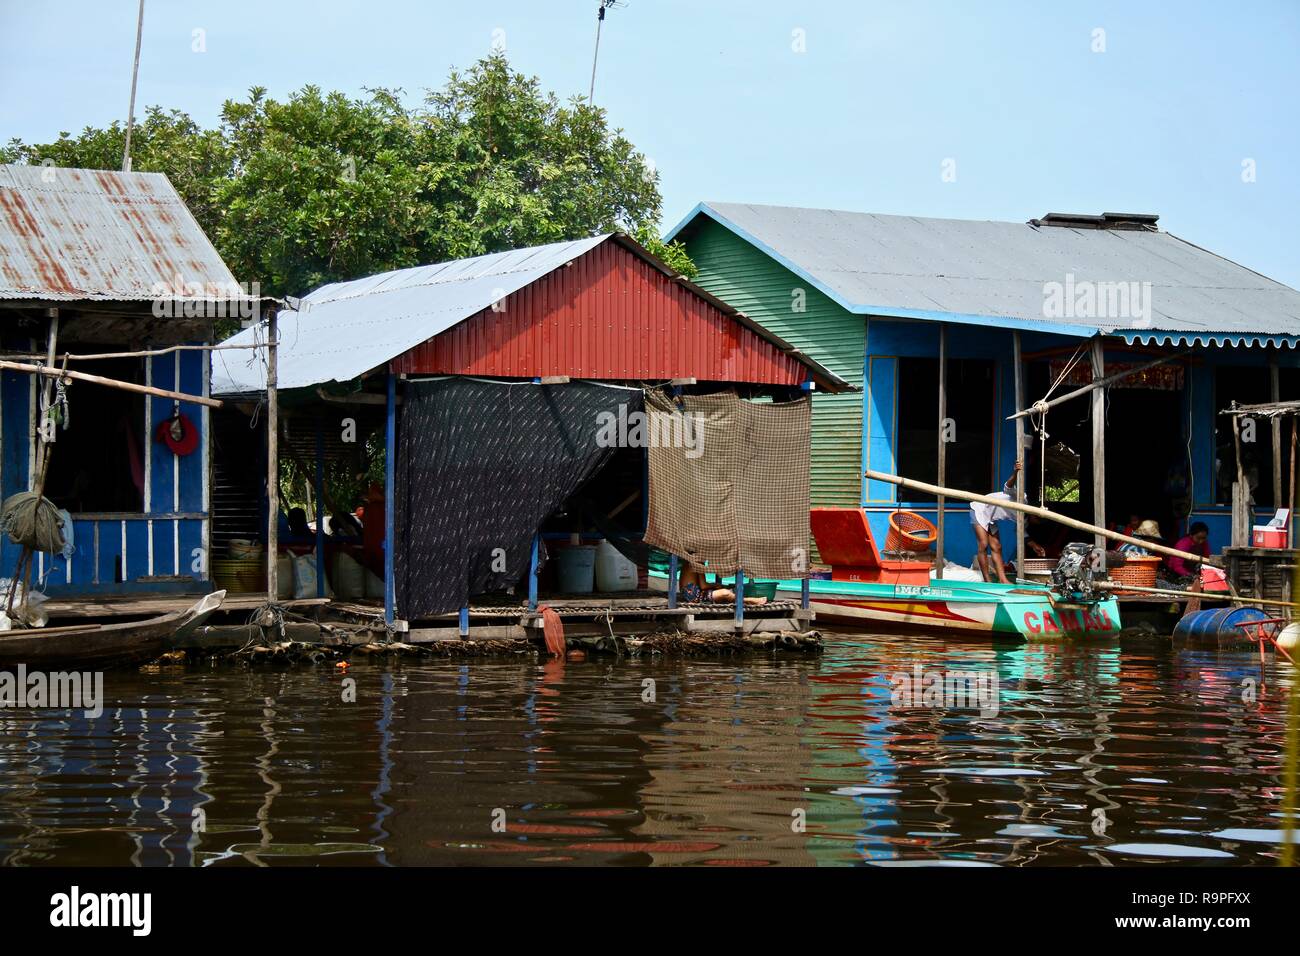 Case galleggianti in un villaggio galleggiante in Asia Foto Stock